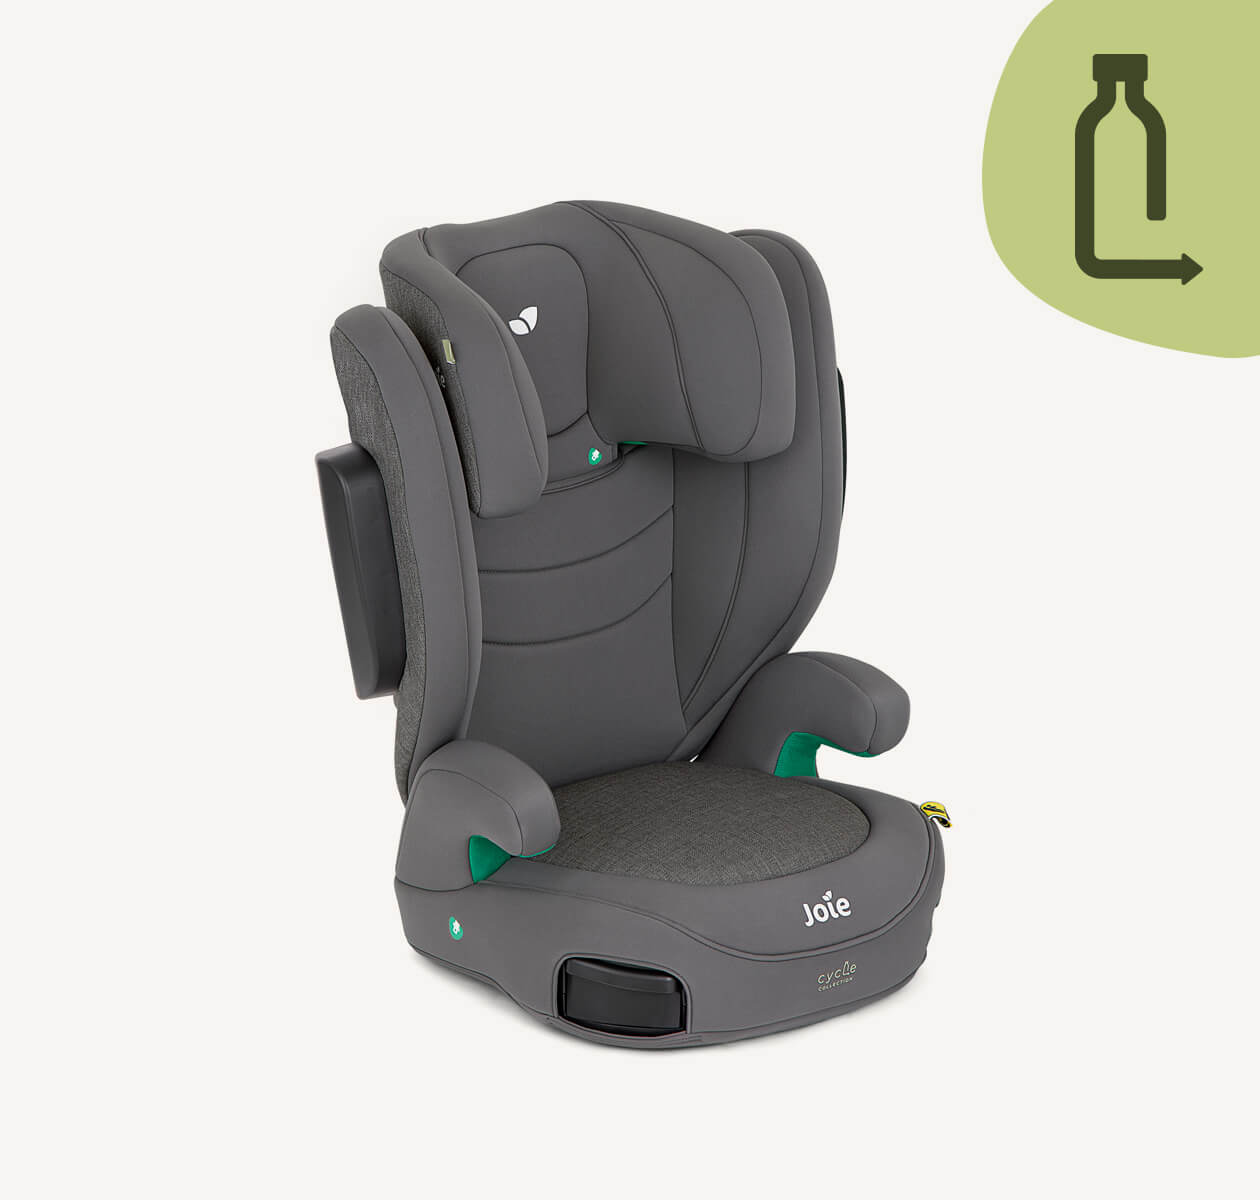 Graue I-Trillo Sitzerhöhung mit hoher Rückenlehne in einem 45-Grad-Winkel nach rechts gerichtet, wobei sich die Kopfstütze in der niedrigsten Position befindet.